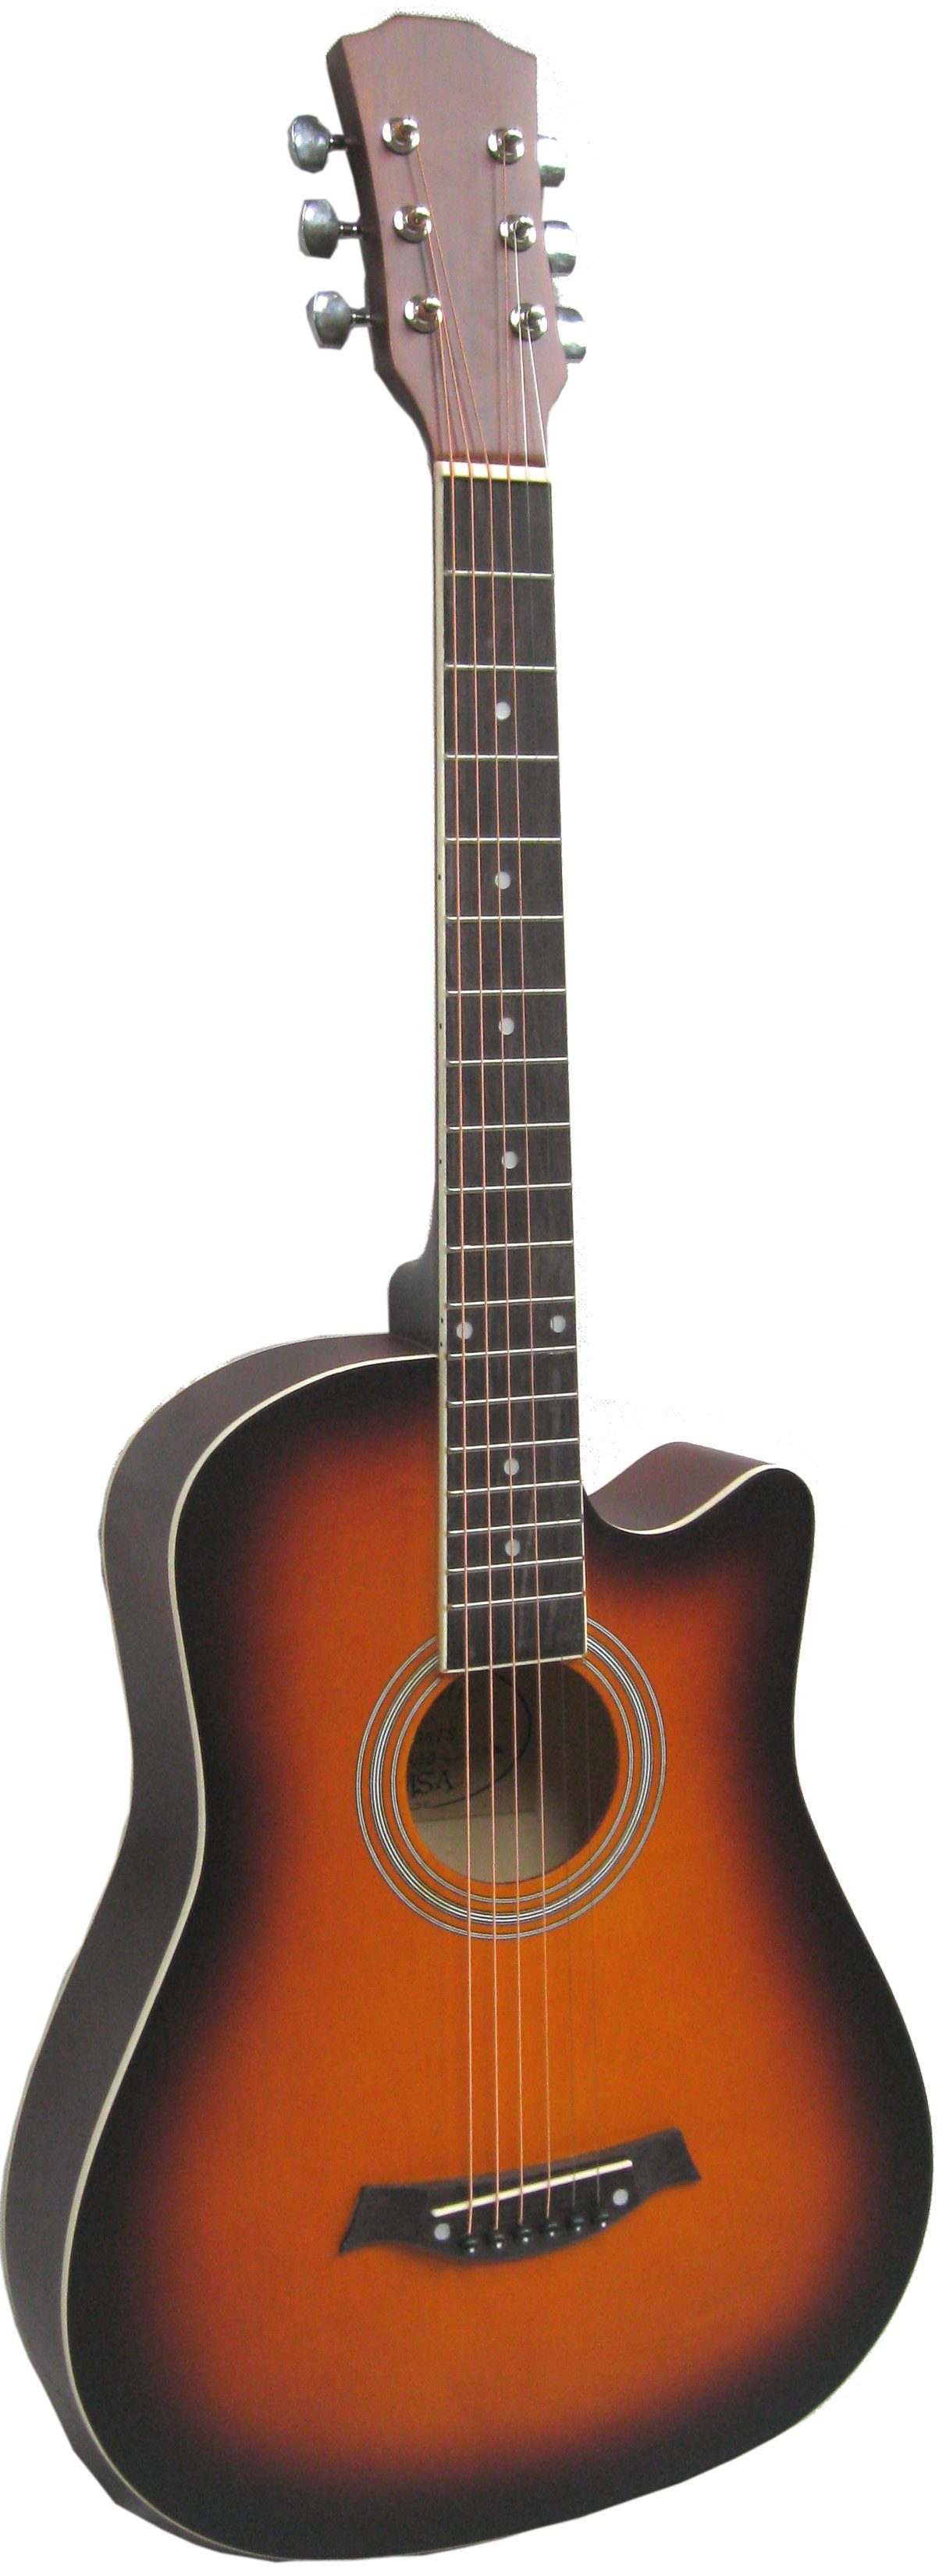 MSA Akustikgitarre 38 Zoll Westerngitarre Junior / Reise Modell Schmaler Korpus, 4/4 Satin